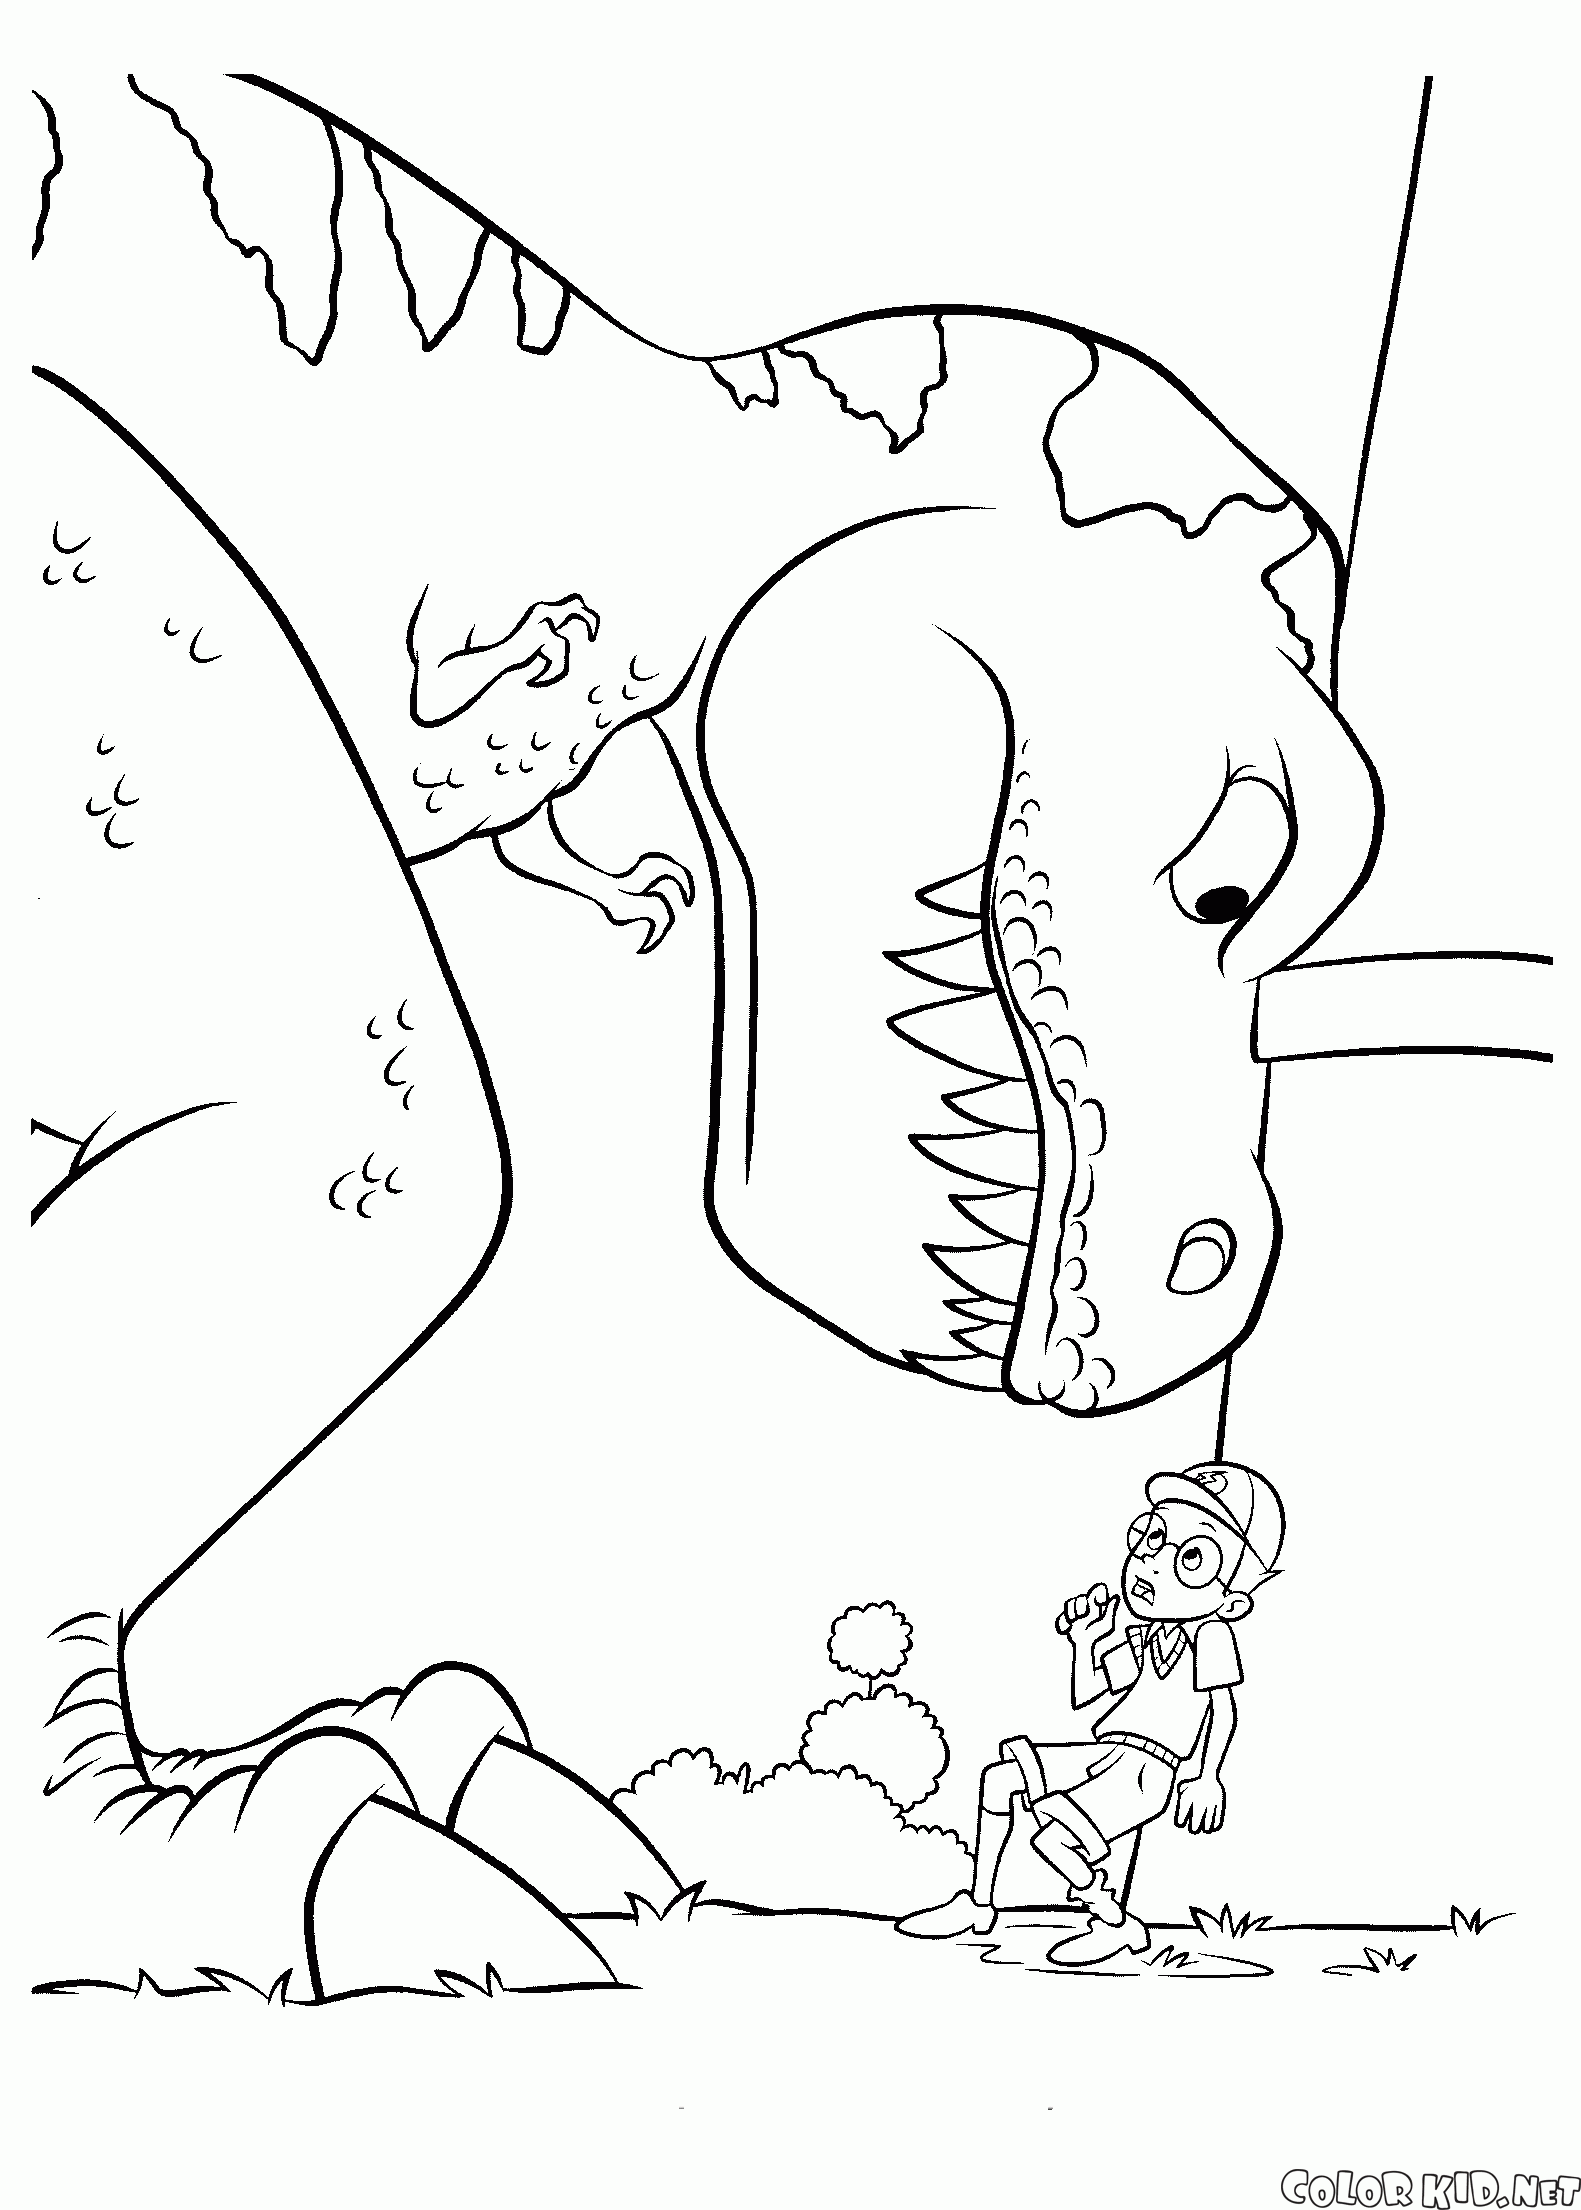 Dinossauro e Lewis